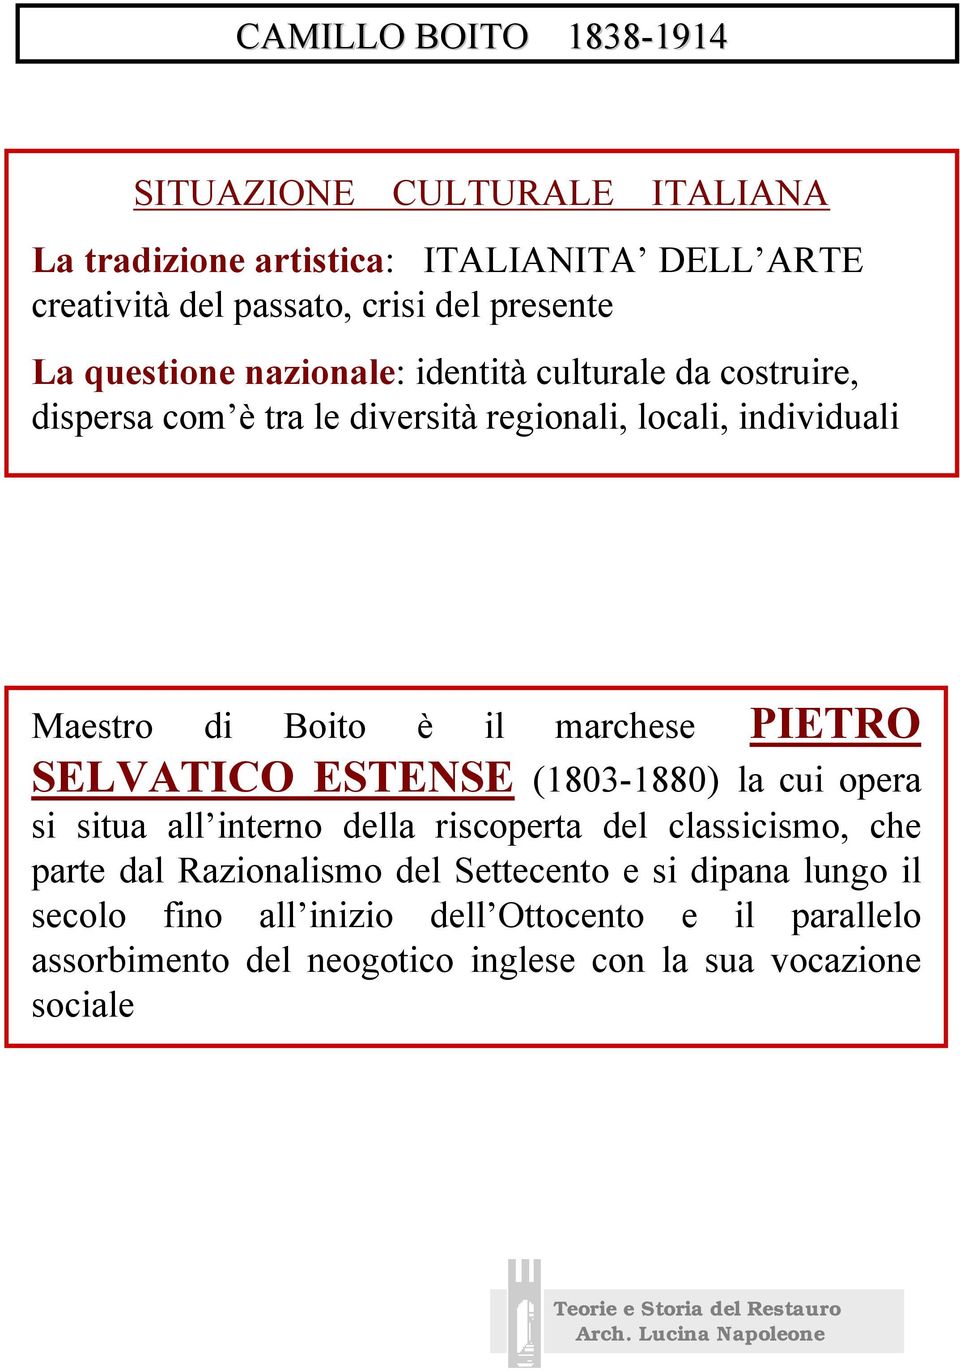 marchese PIETRO SELVATICO ESTENSE (1803-1880) la cui opera si situa all interno della riscoperta del classicismo, che parte dal Razionalismo